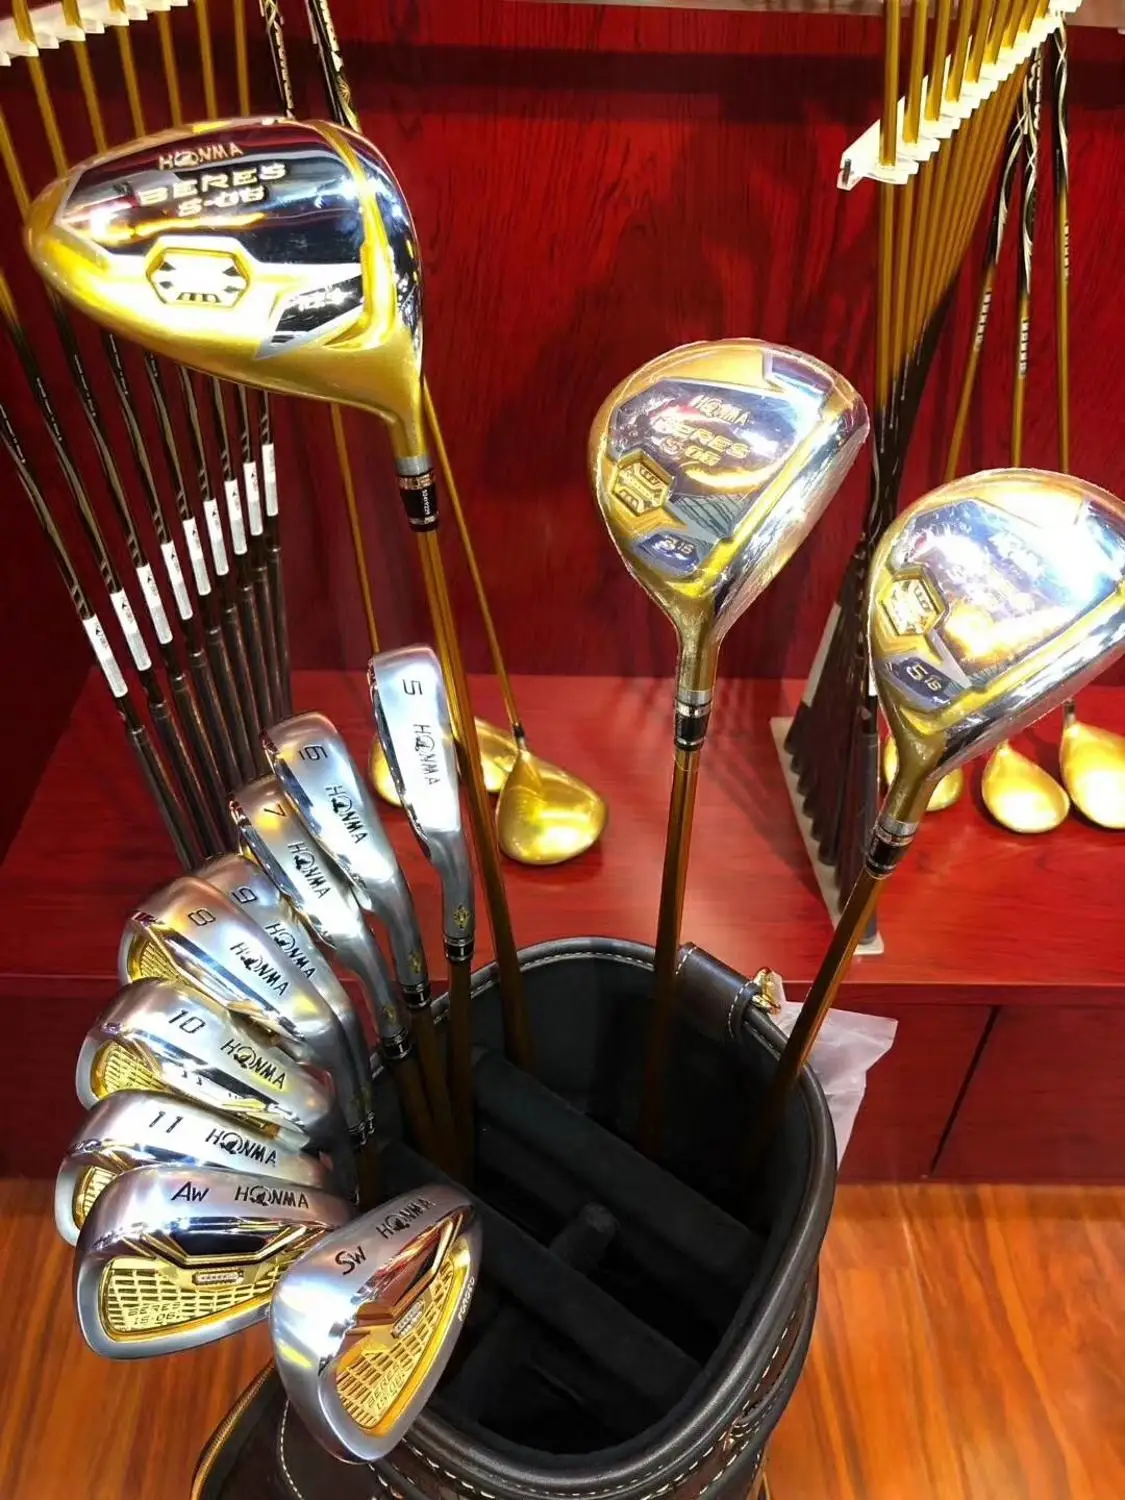 Комплект для гольф-клубов Honma Bere S-06 4 звезды наборы гольф-клуба Драйвер+ Фарватер+ гольф железо+ клюшка(14 шт.)+ сумка для гольфа